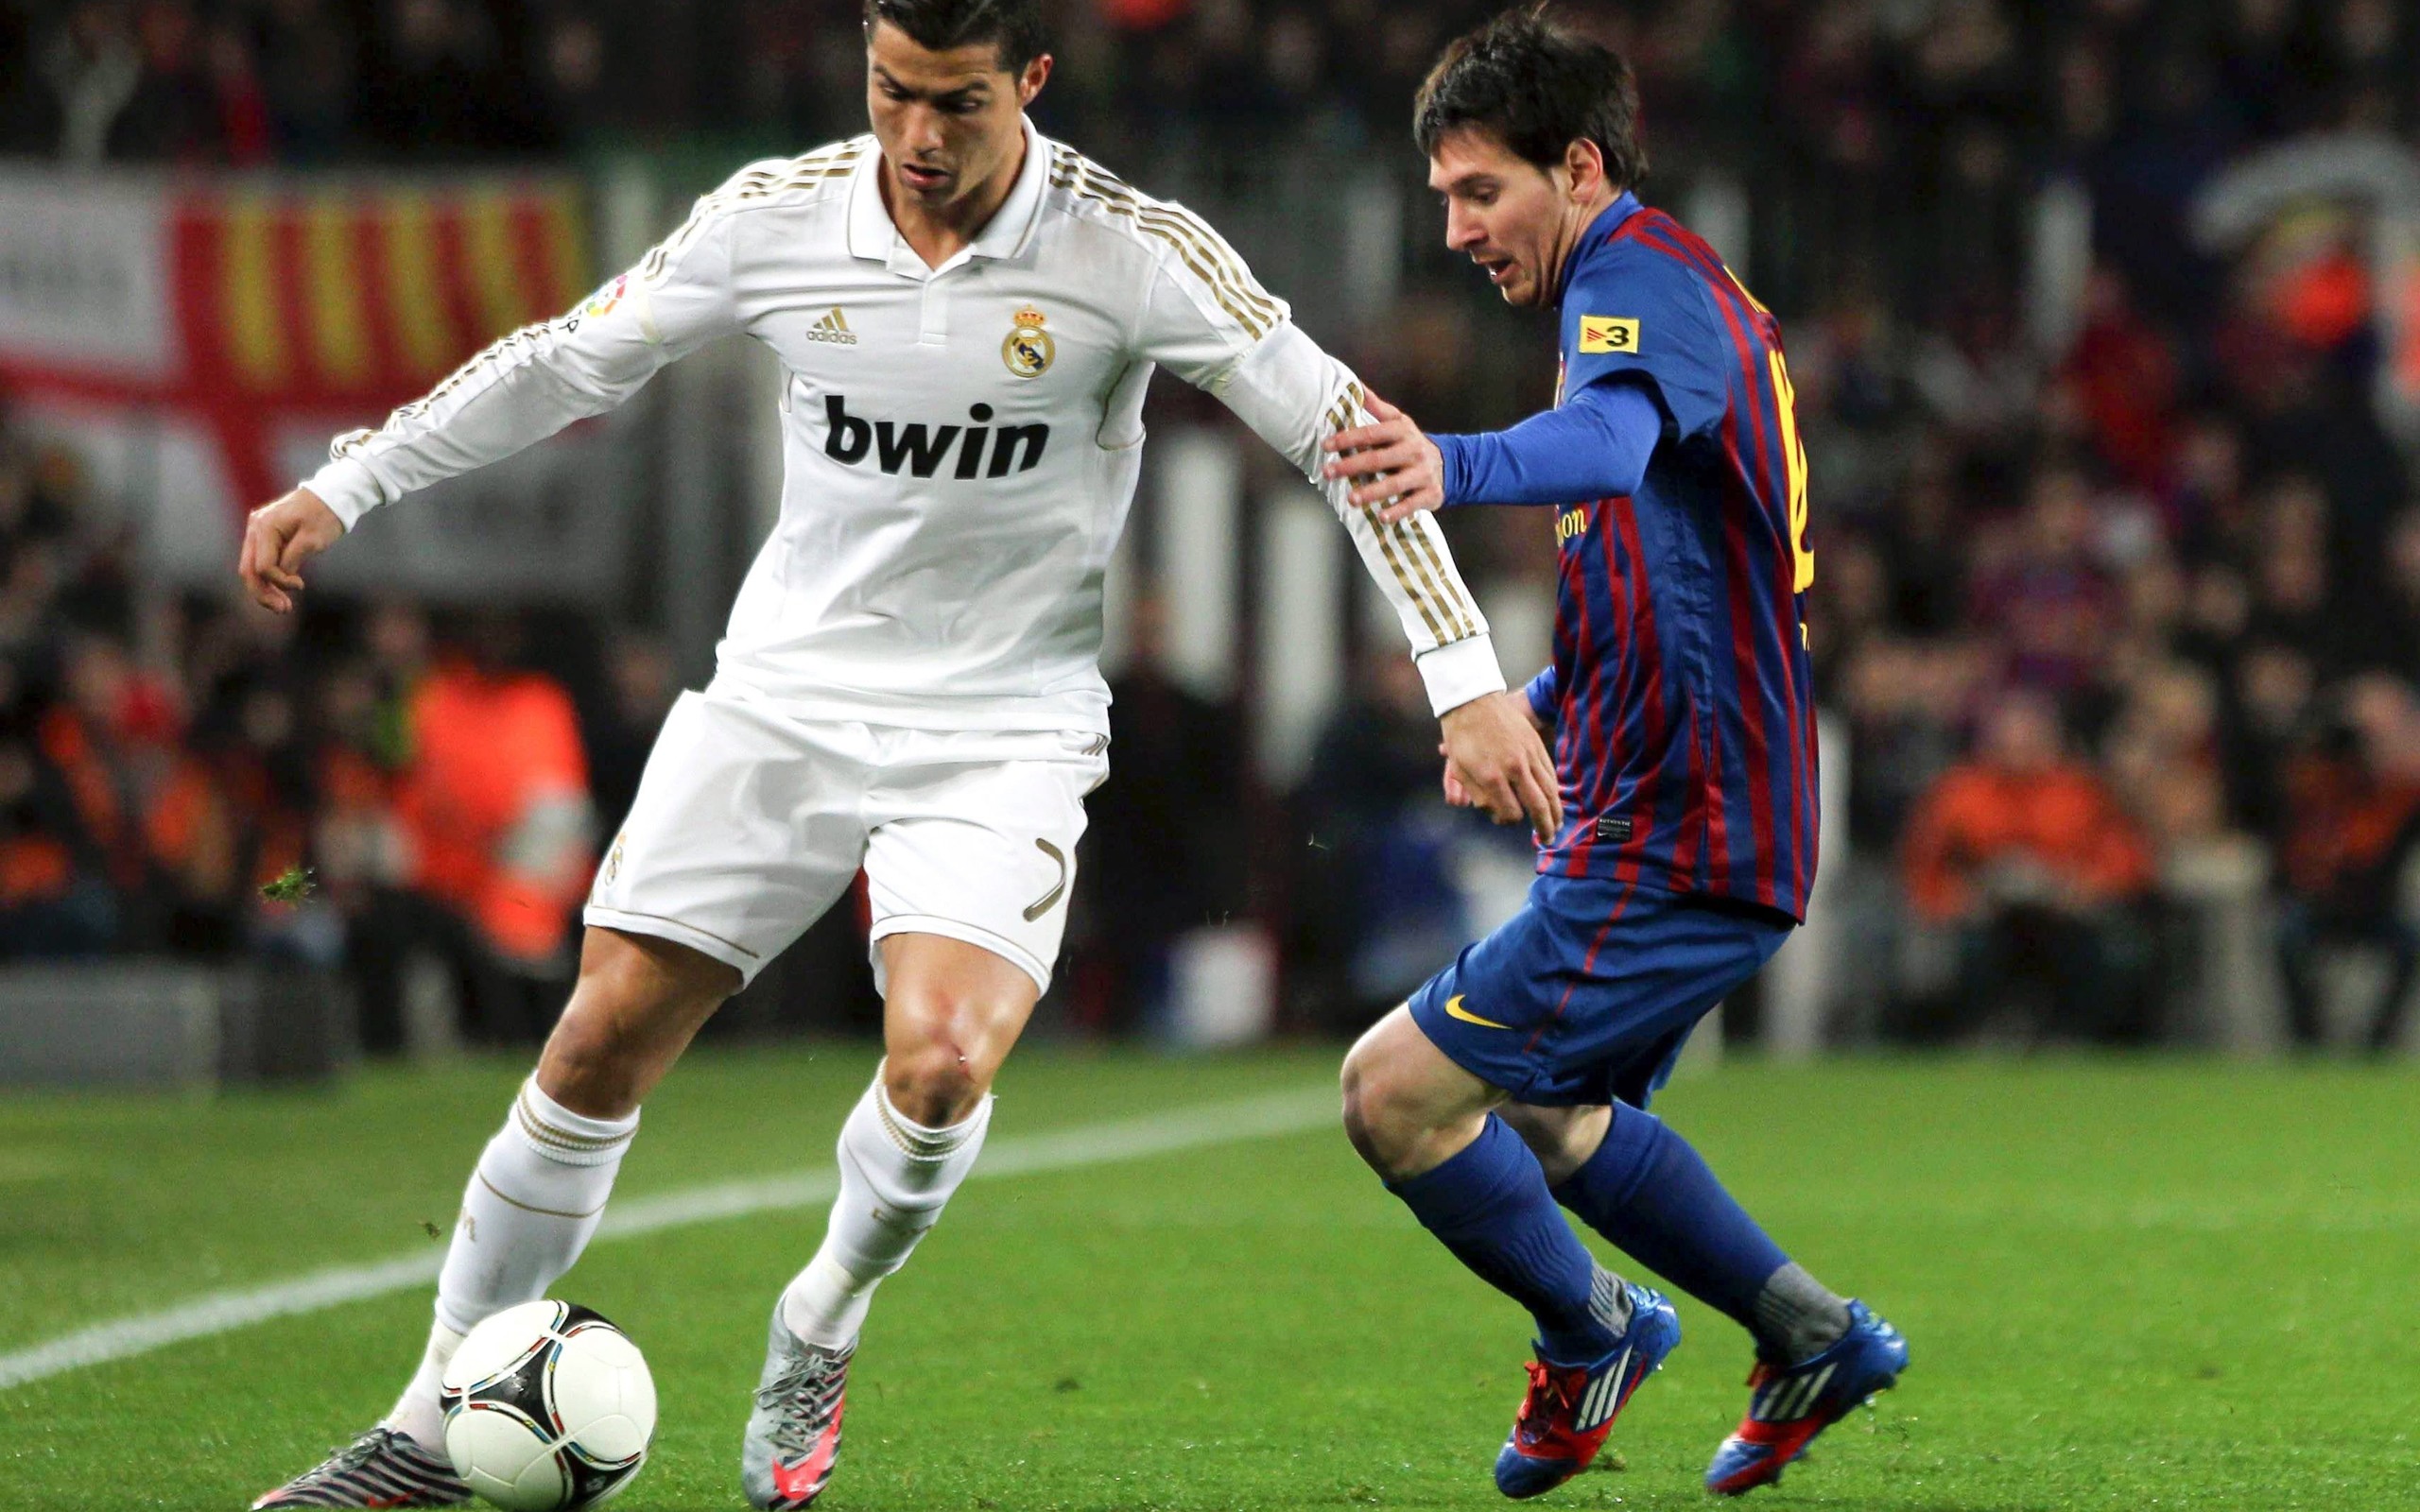 Lionel Messi vs Cristiano Ronaldo Wallpaper